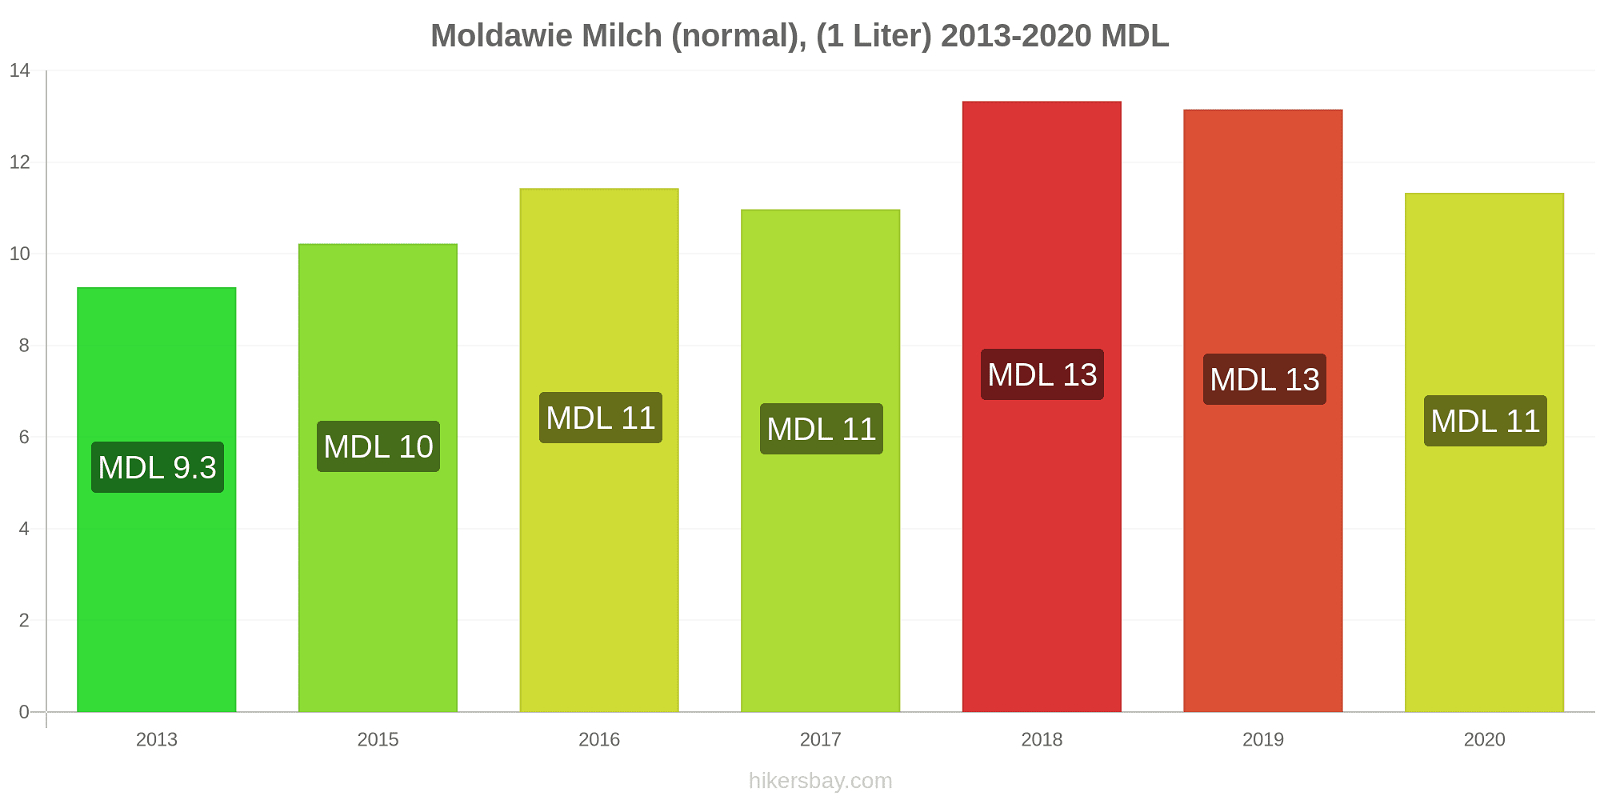 Moldawie Preisänderungen (Regulär), Milch (1 Liter) hikersbay.com